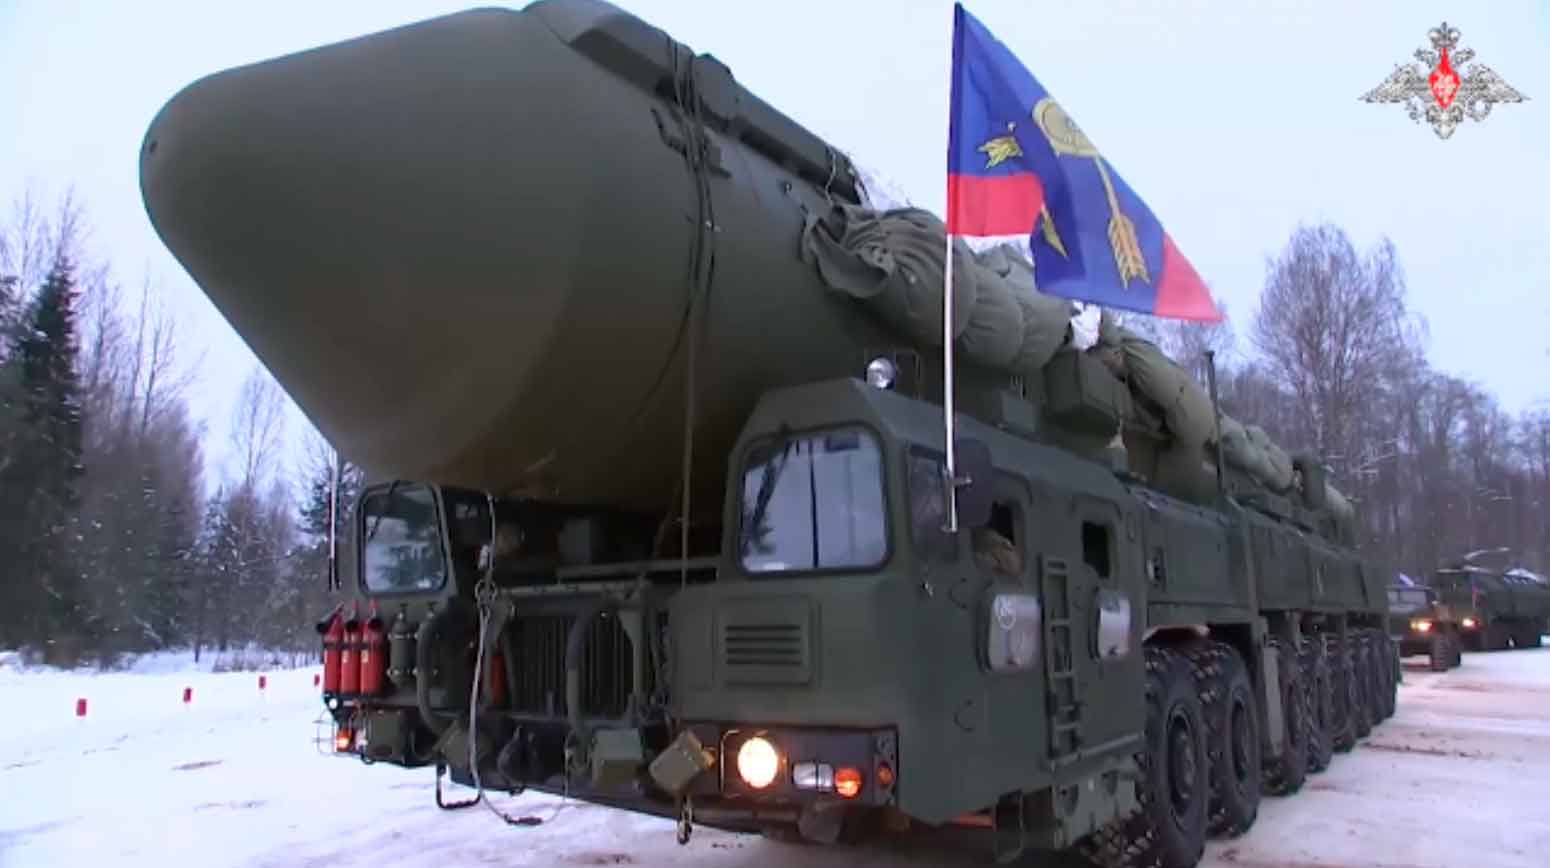 O míssil balístico intercontinental Yars, uma das armas mais mortíferas da Rússia, tem um alcance de 12.500 km, tornando-o mais do que capaz de atingir a toda e Europa, Grã-Bretanha e os EUA.